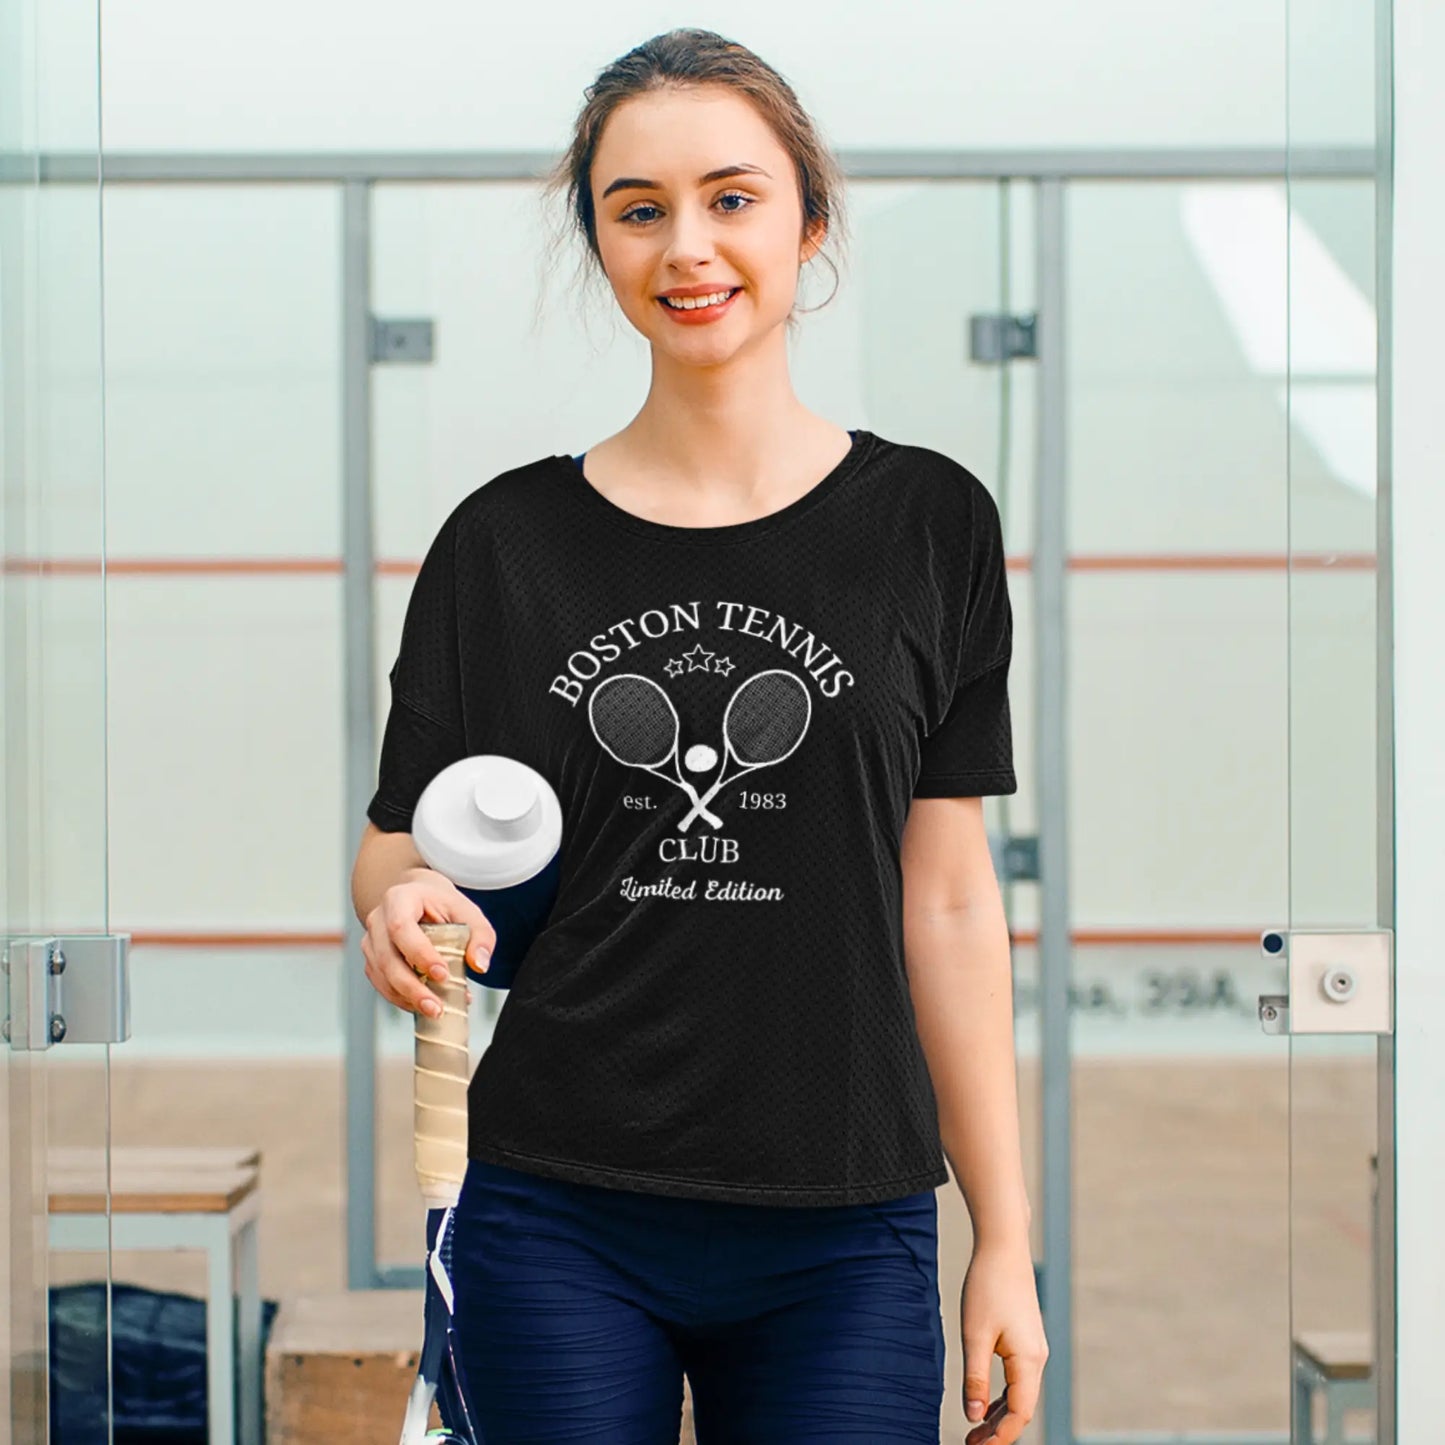 Boston Tennis Club Tee - Retro Sporty Print T-Shirt